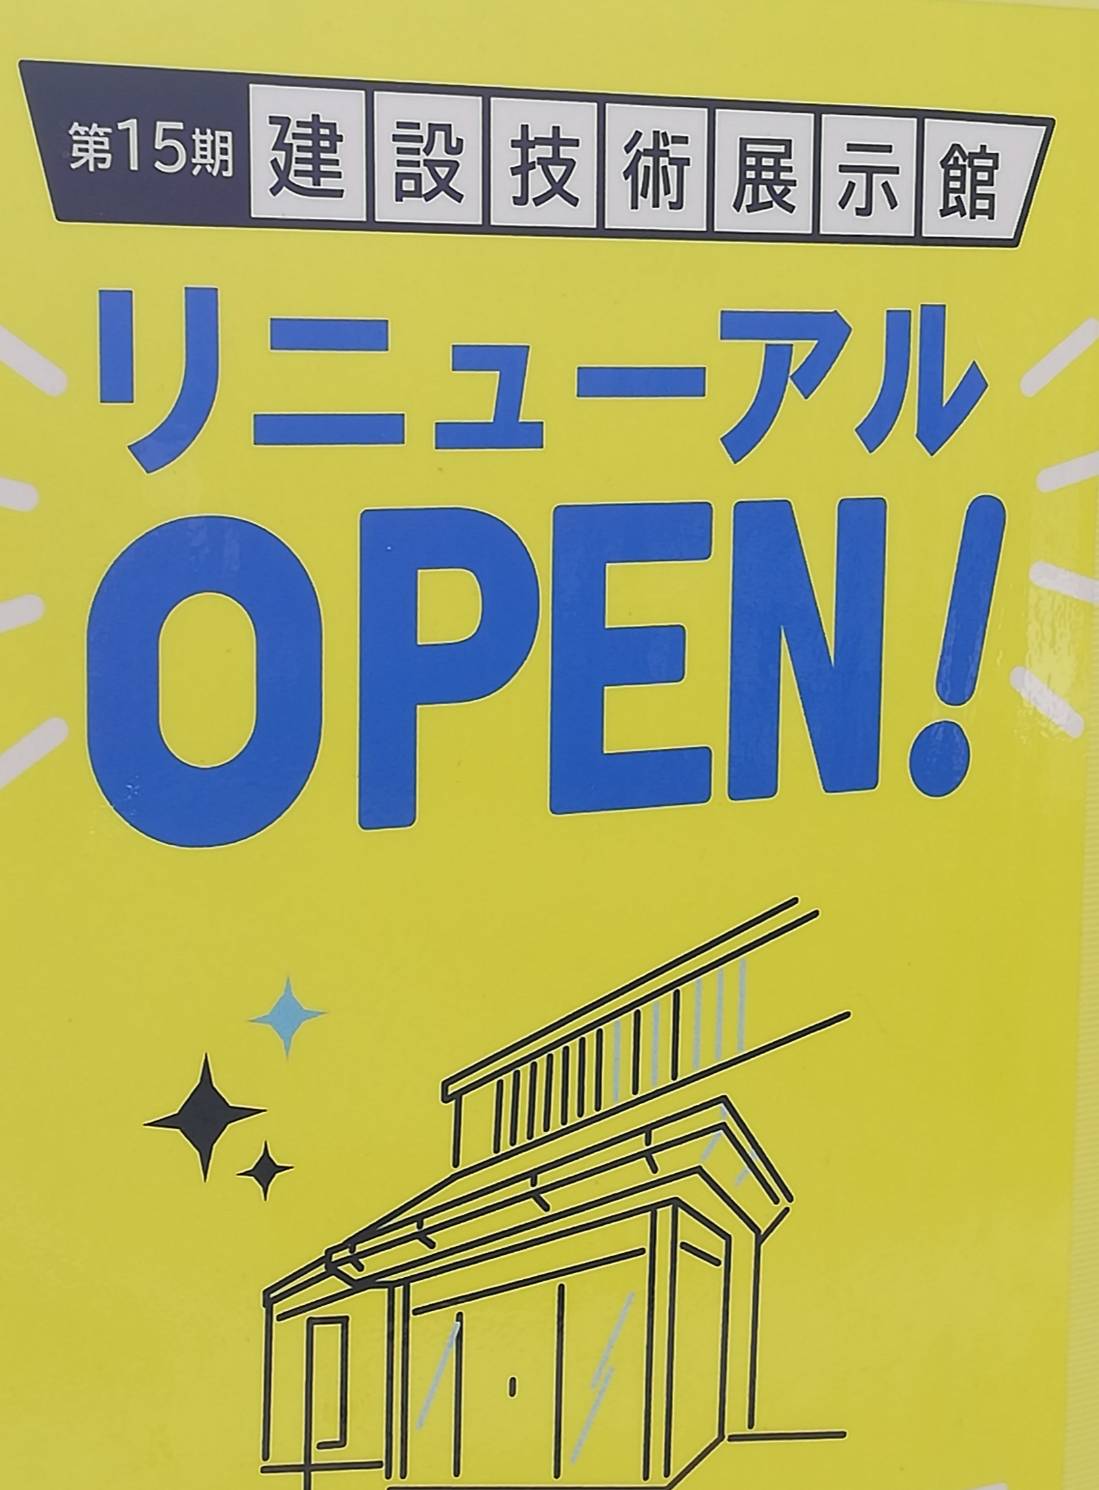 関東技術事務所建設技術展示館リニューアルオープン